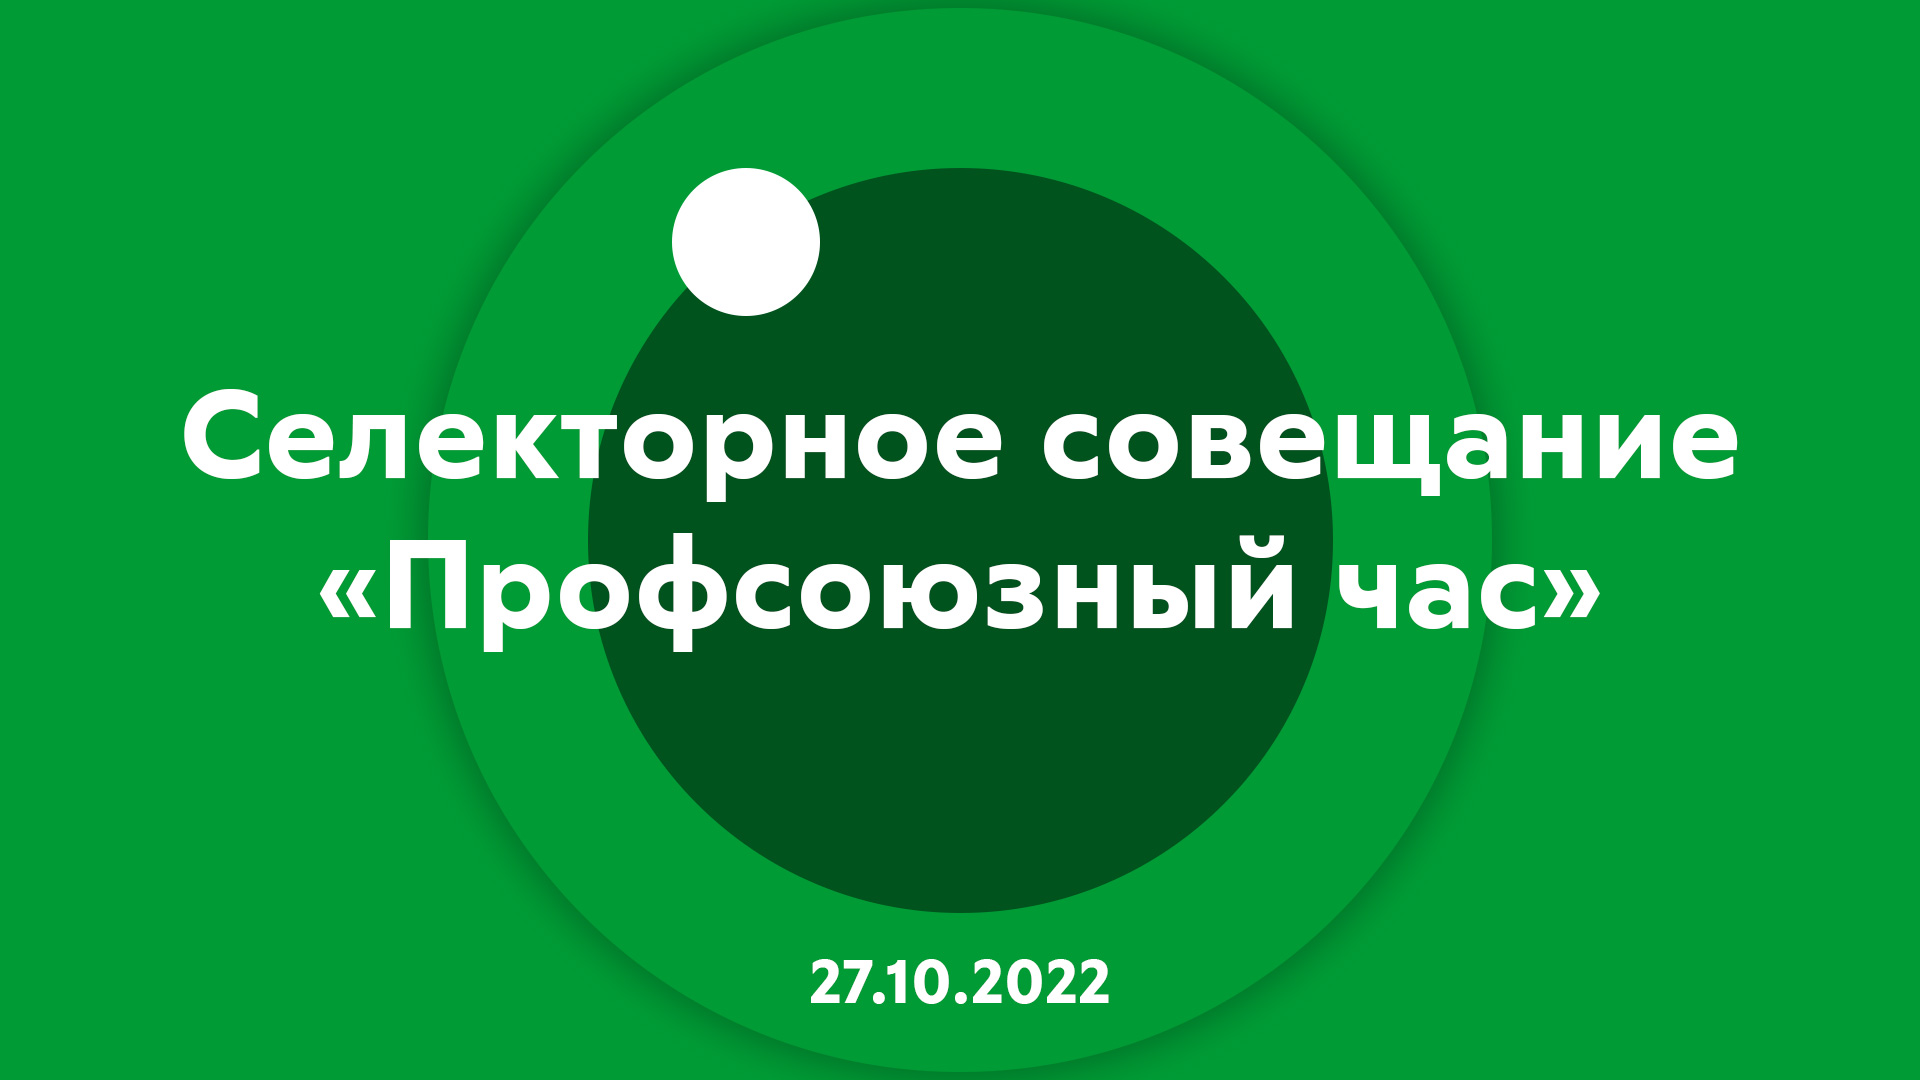 Селекторное совещание "Профсоюзный час" 27.10.2022